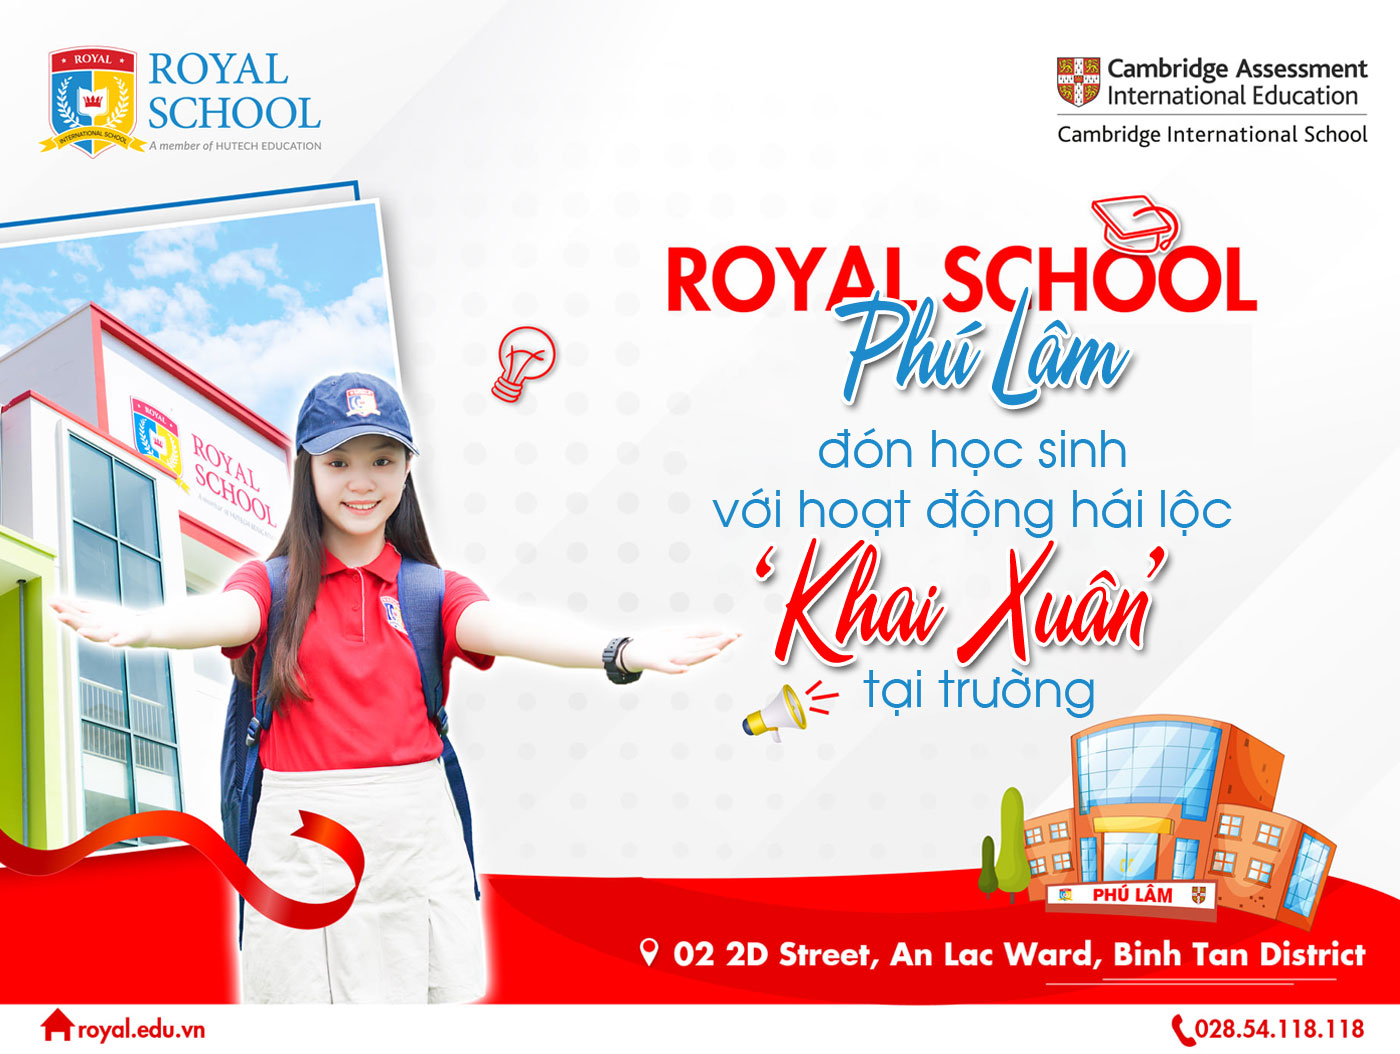 Royal School Phú Lâm đón học sinh với hoạt động hái lộc khai xuân tại trường - Ảnh 1